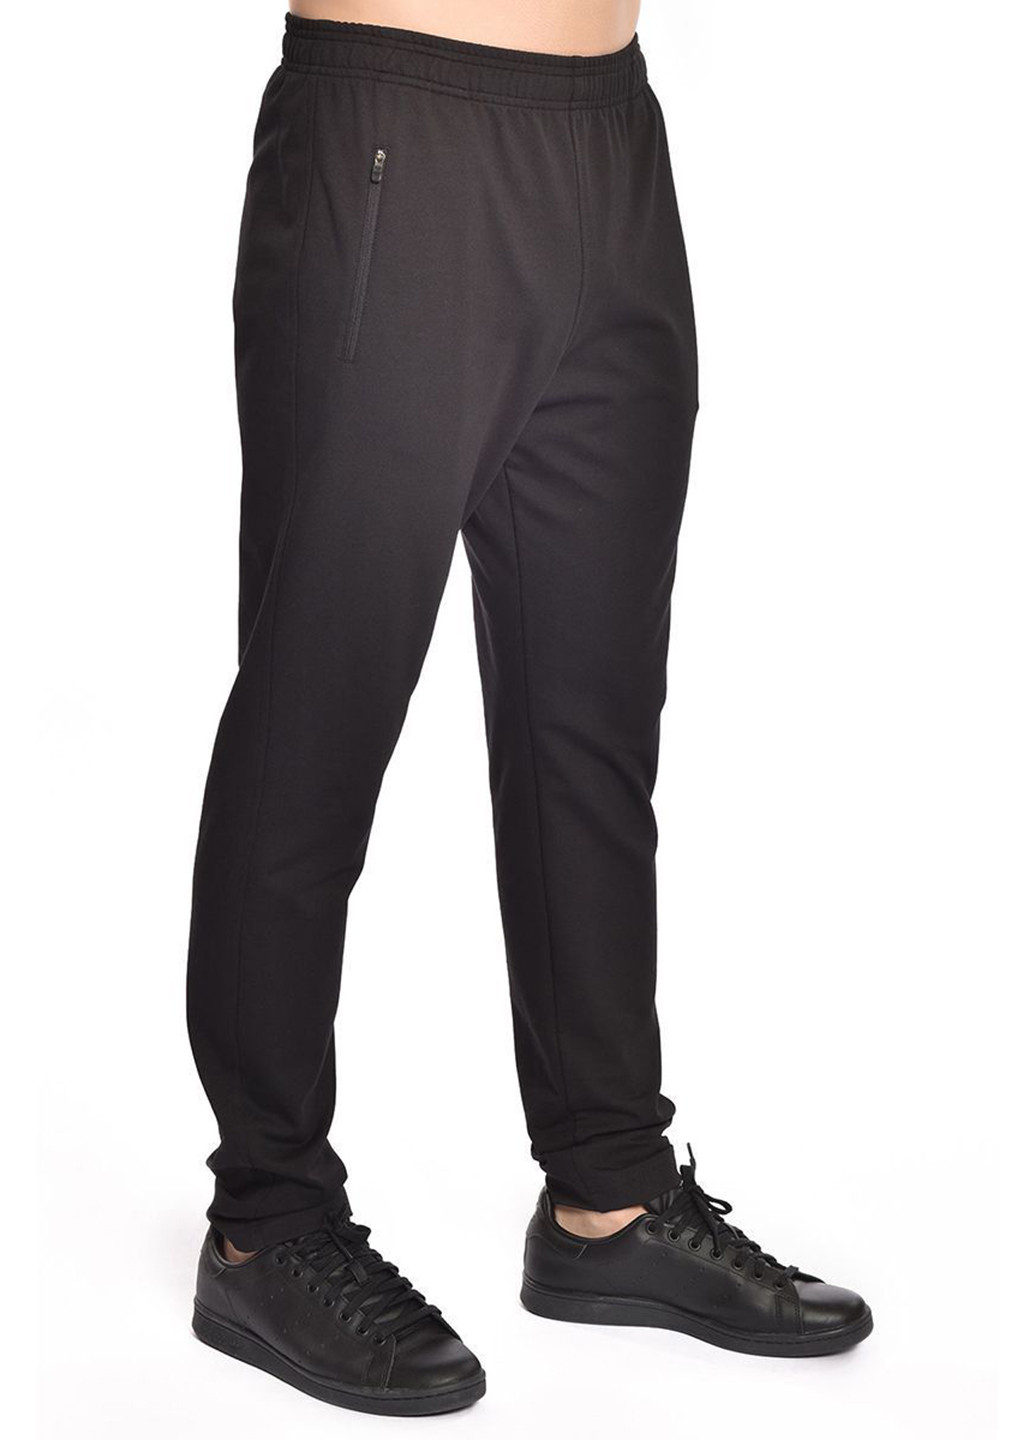 Черный демисезонный костюм (толстовка, брюки) брючный Bilcee